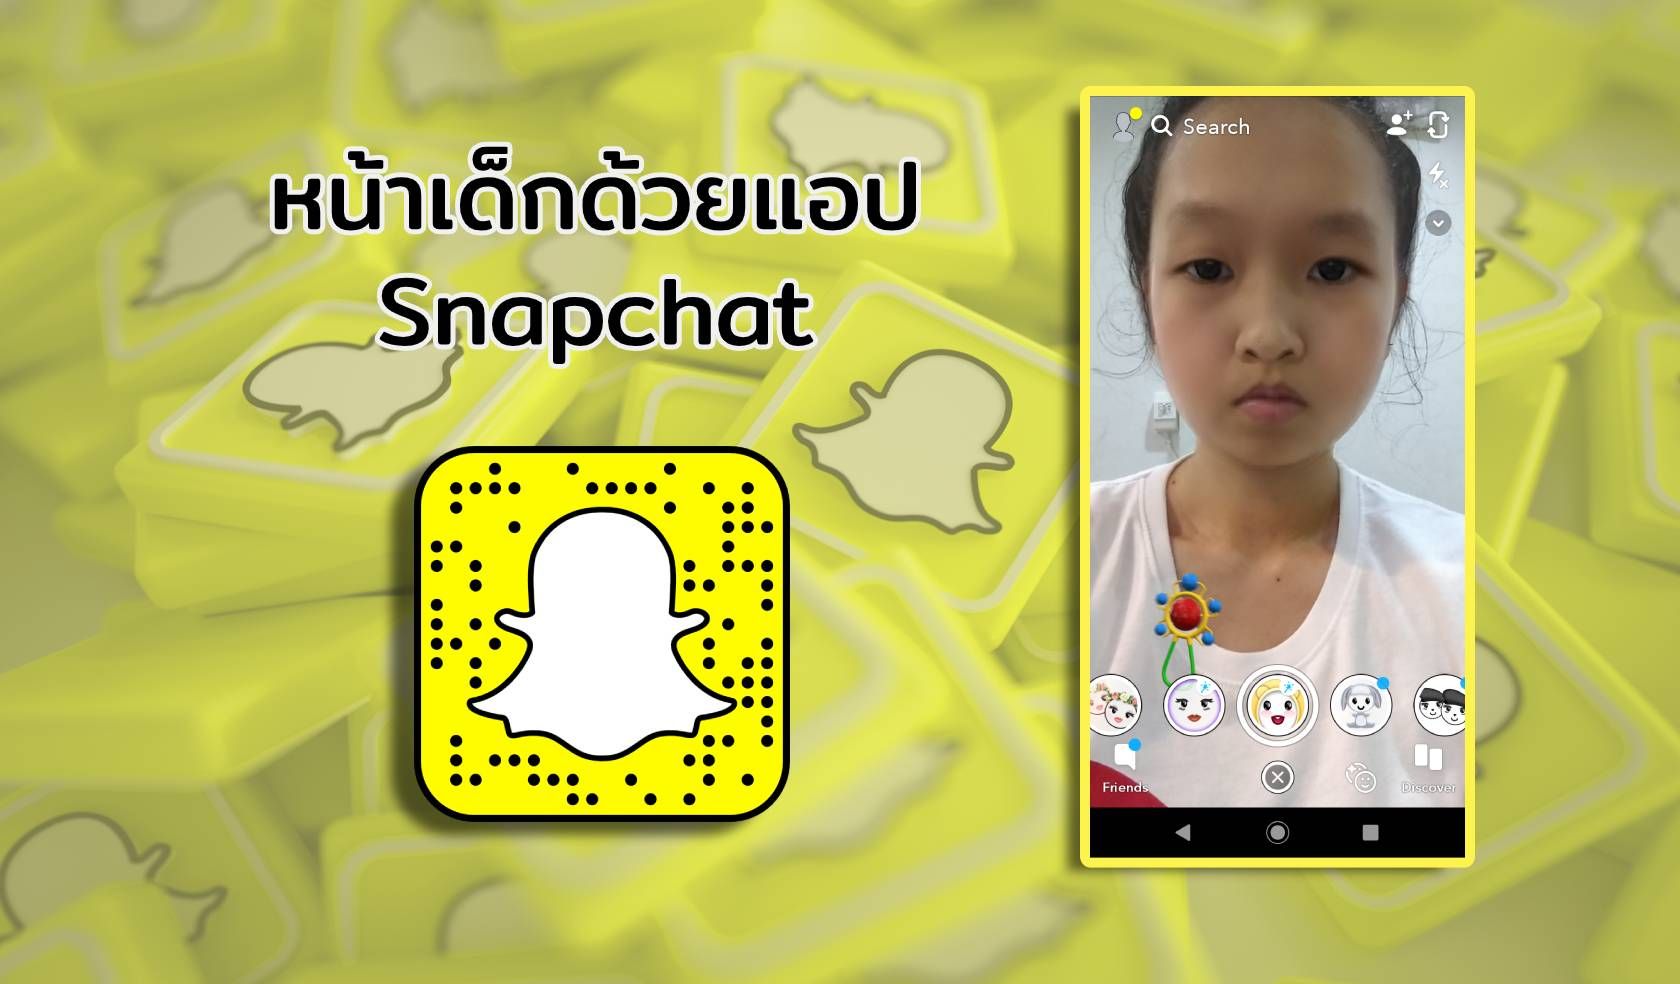 ถ่ายรูปหน้าเด็กด้วยแอป Snapchat แชร์กันสนั่นโซเชียล โหลดเล่นฟรีทั้ง iOS และ Android